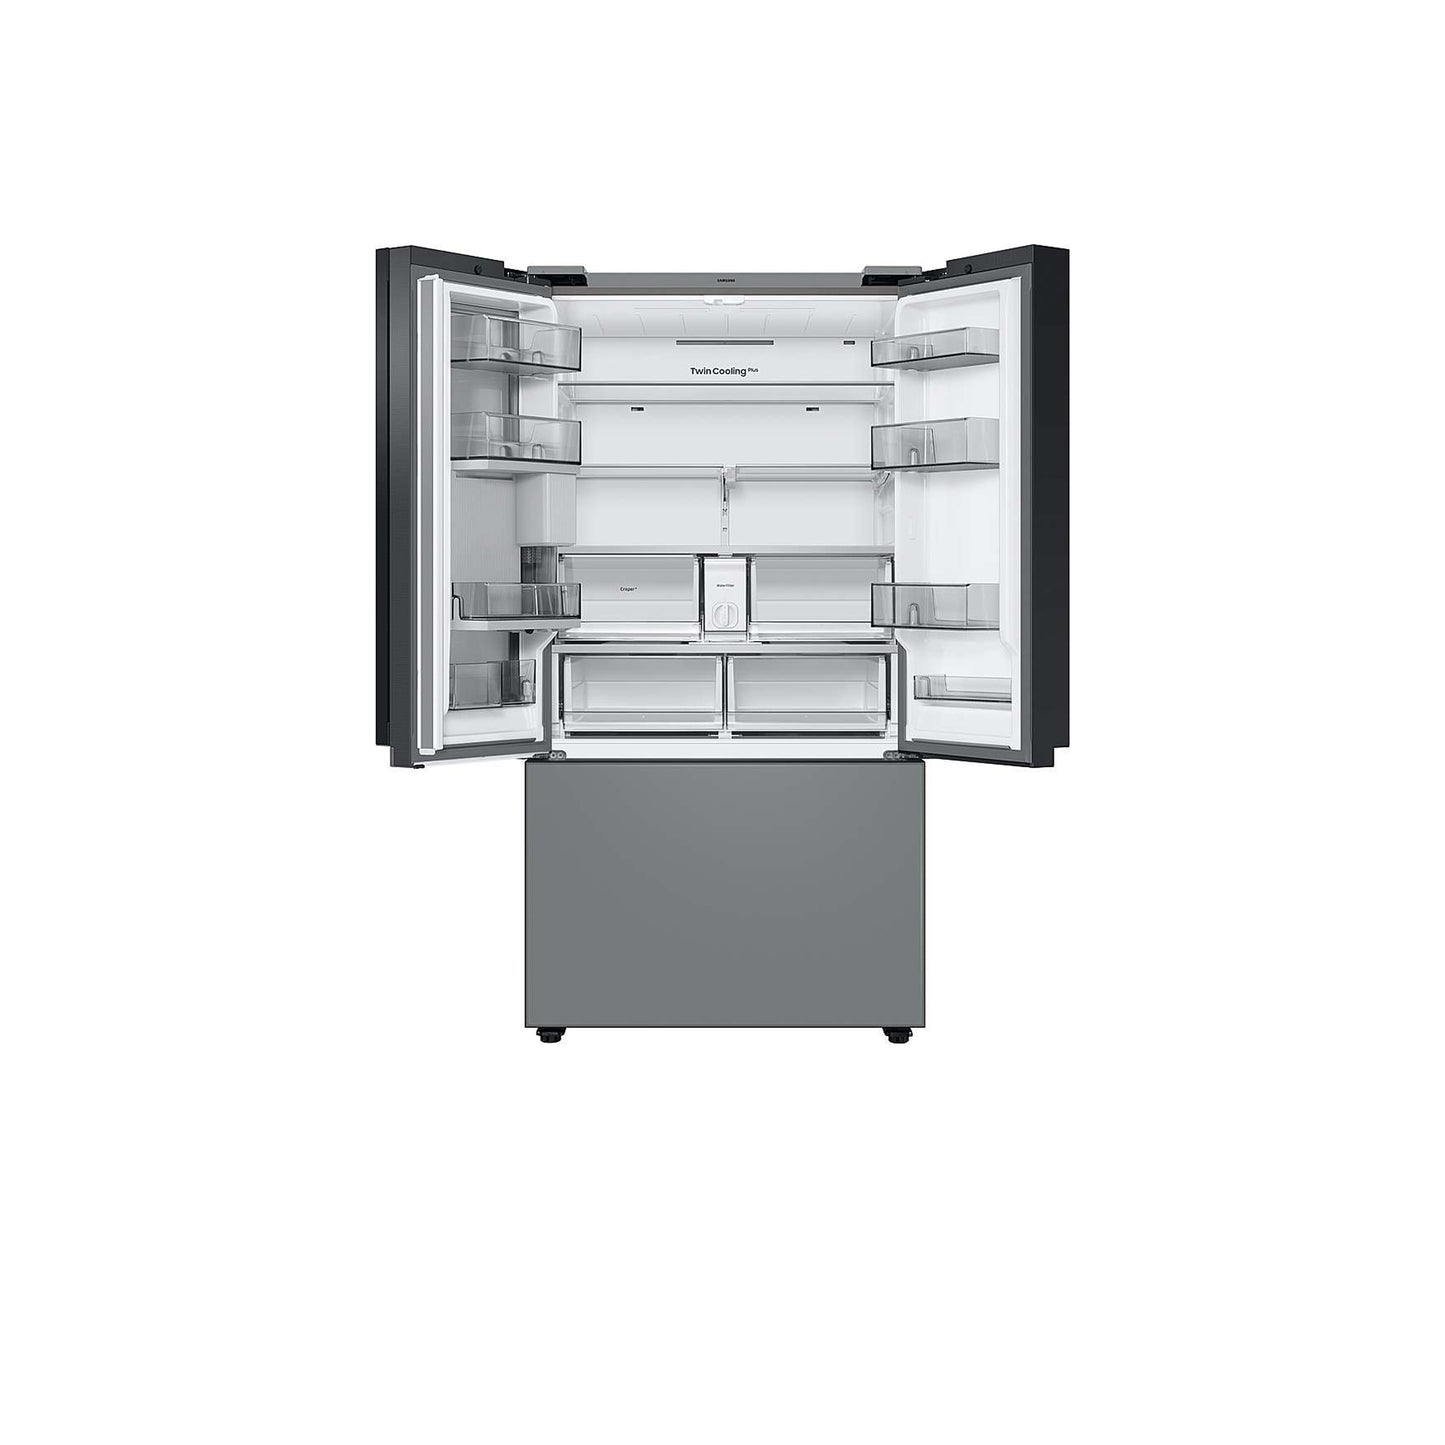 ثلاجة مخصصة ذات باب فرنسي بثلاثة أبواب (30 قدمًا مكعبًا) - مزودة بتقنية Family Hub™ المصنوعة من الزجاج الفحمي. 